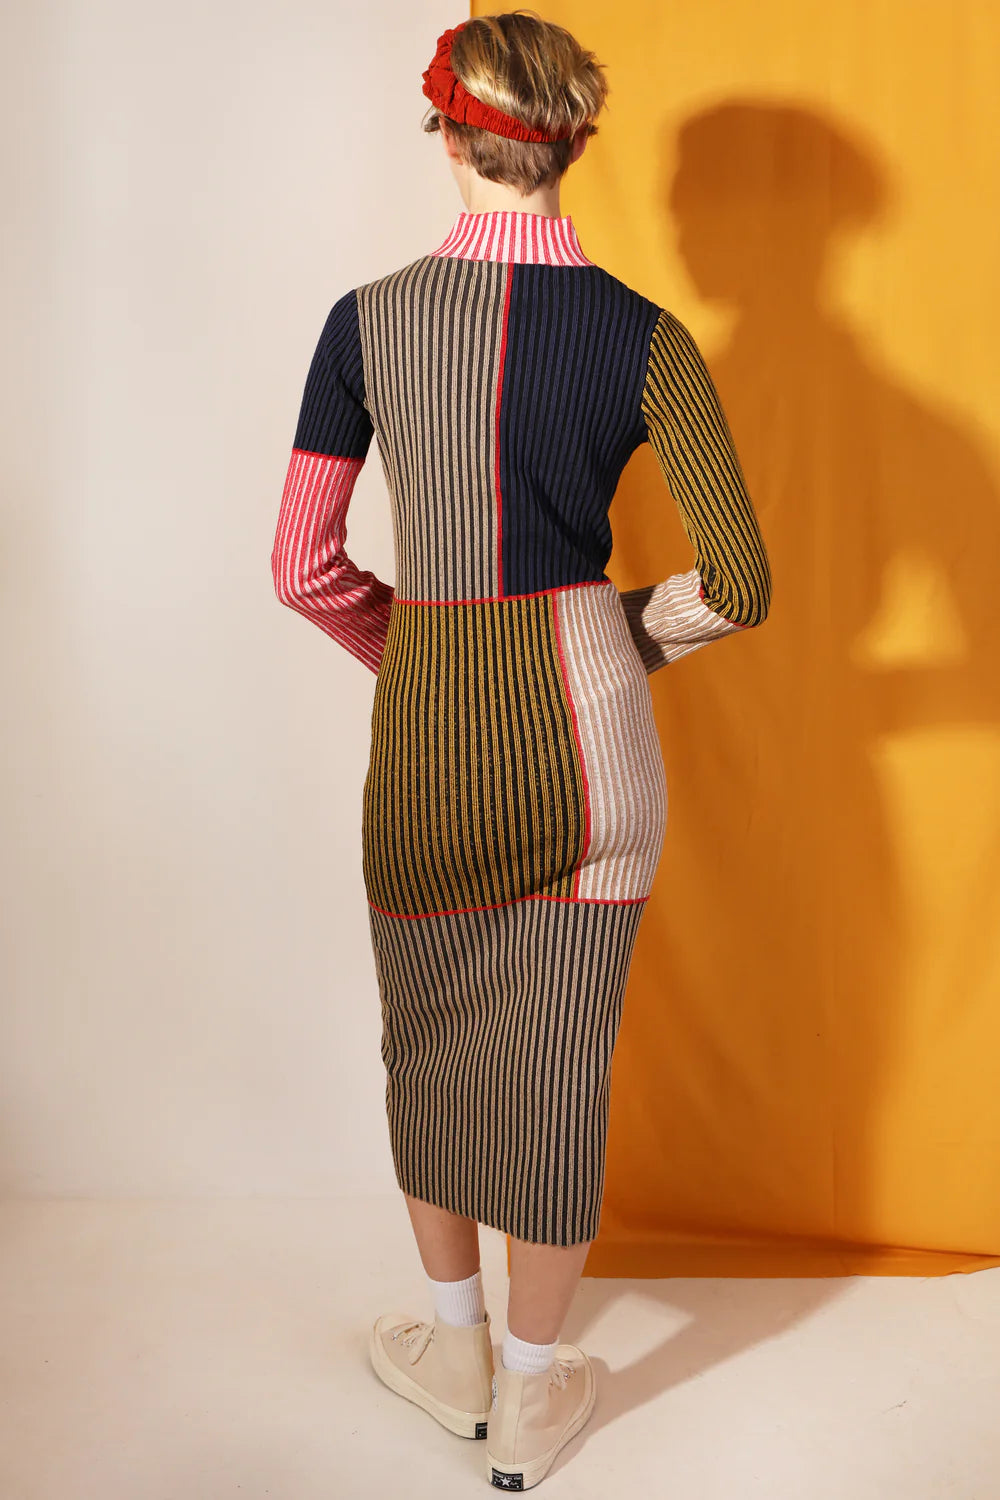 LF Markey | Cecil Dress